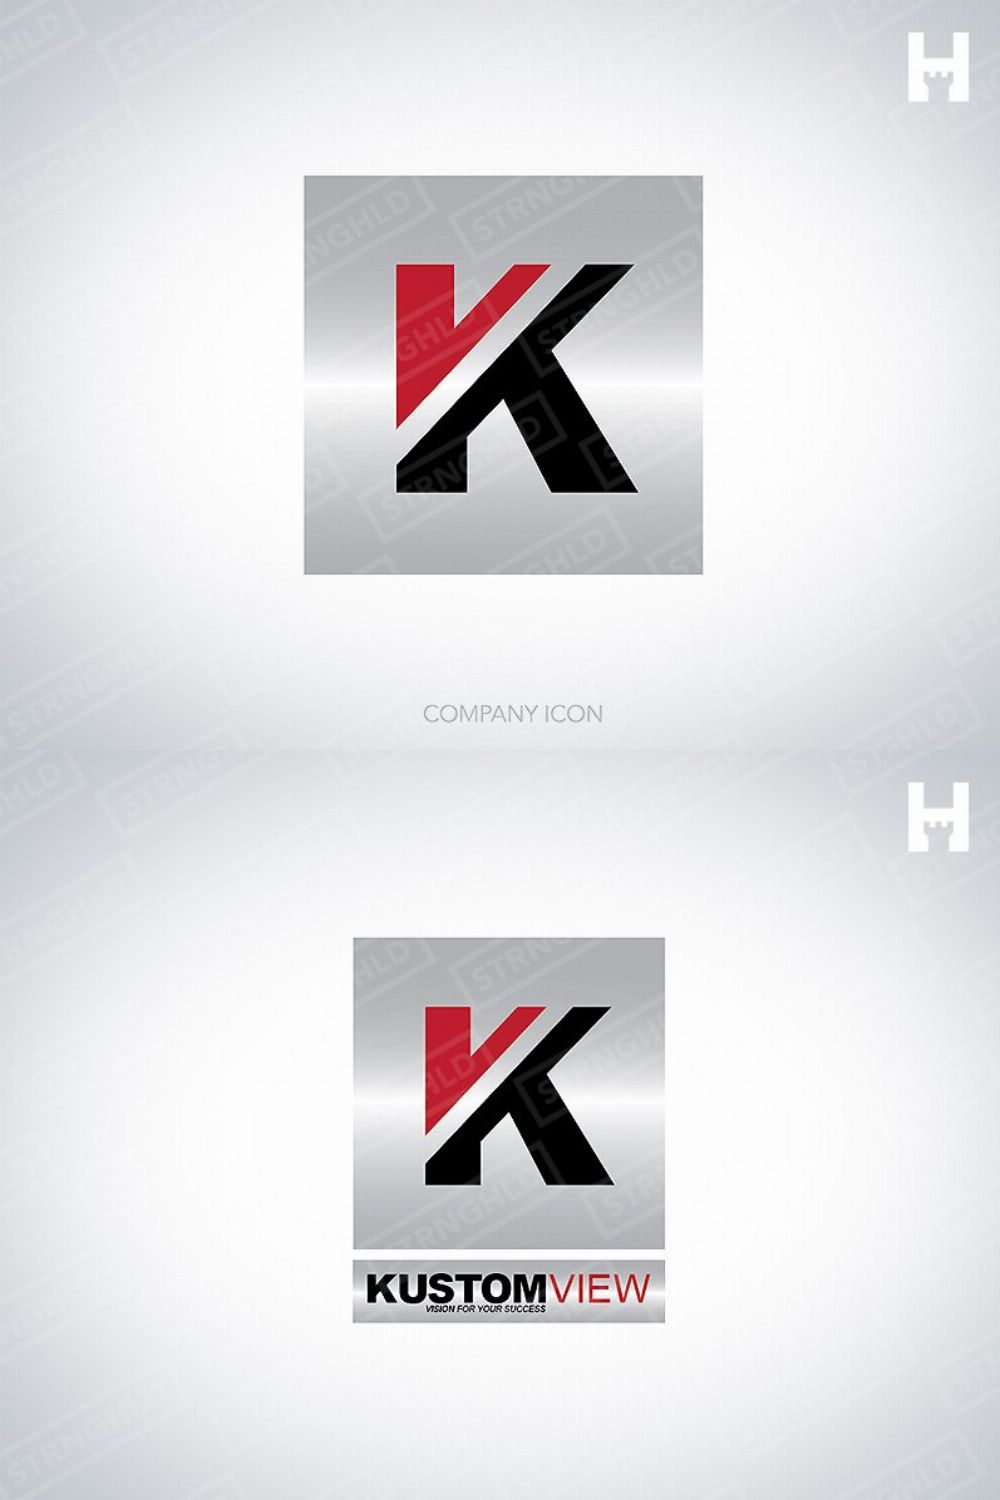 Logo Template - K Brandmark pinterest preview image.